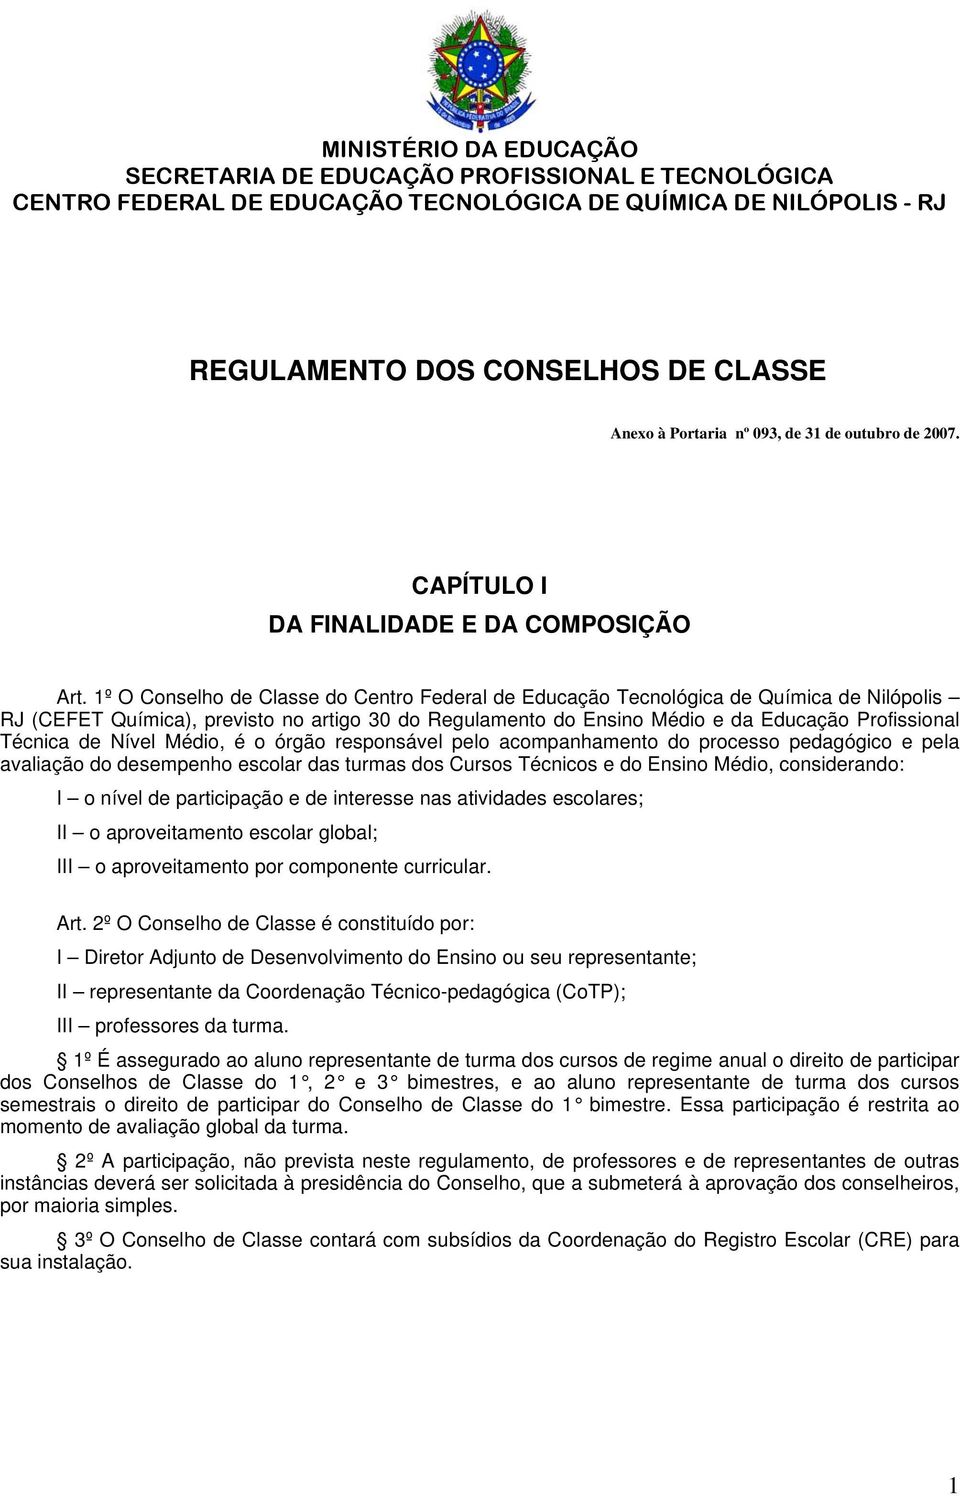 1º O Conselho de Classe do Centro Federal de Educação Tecnológica de Química de Nilópolis RJ (CEFET Química), previsto no artigo 30 do Regulamento do Ensino Médio e da Educação Profissional Técnica